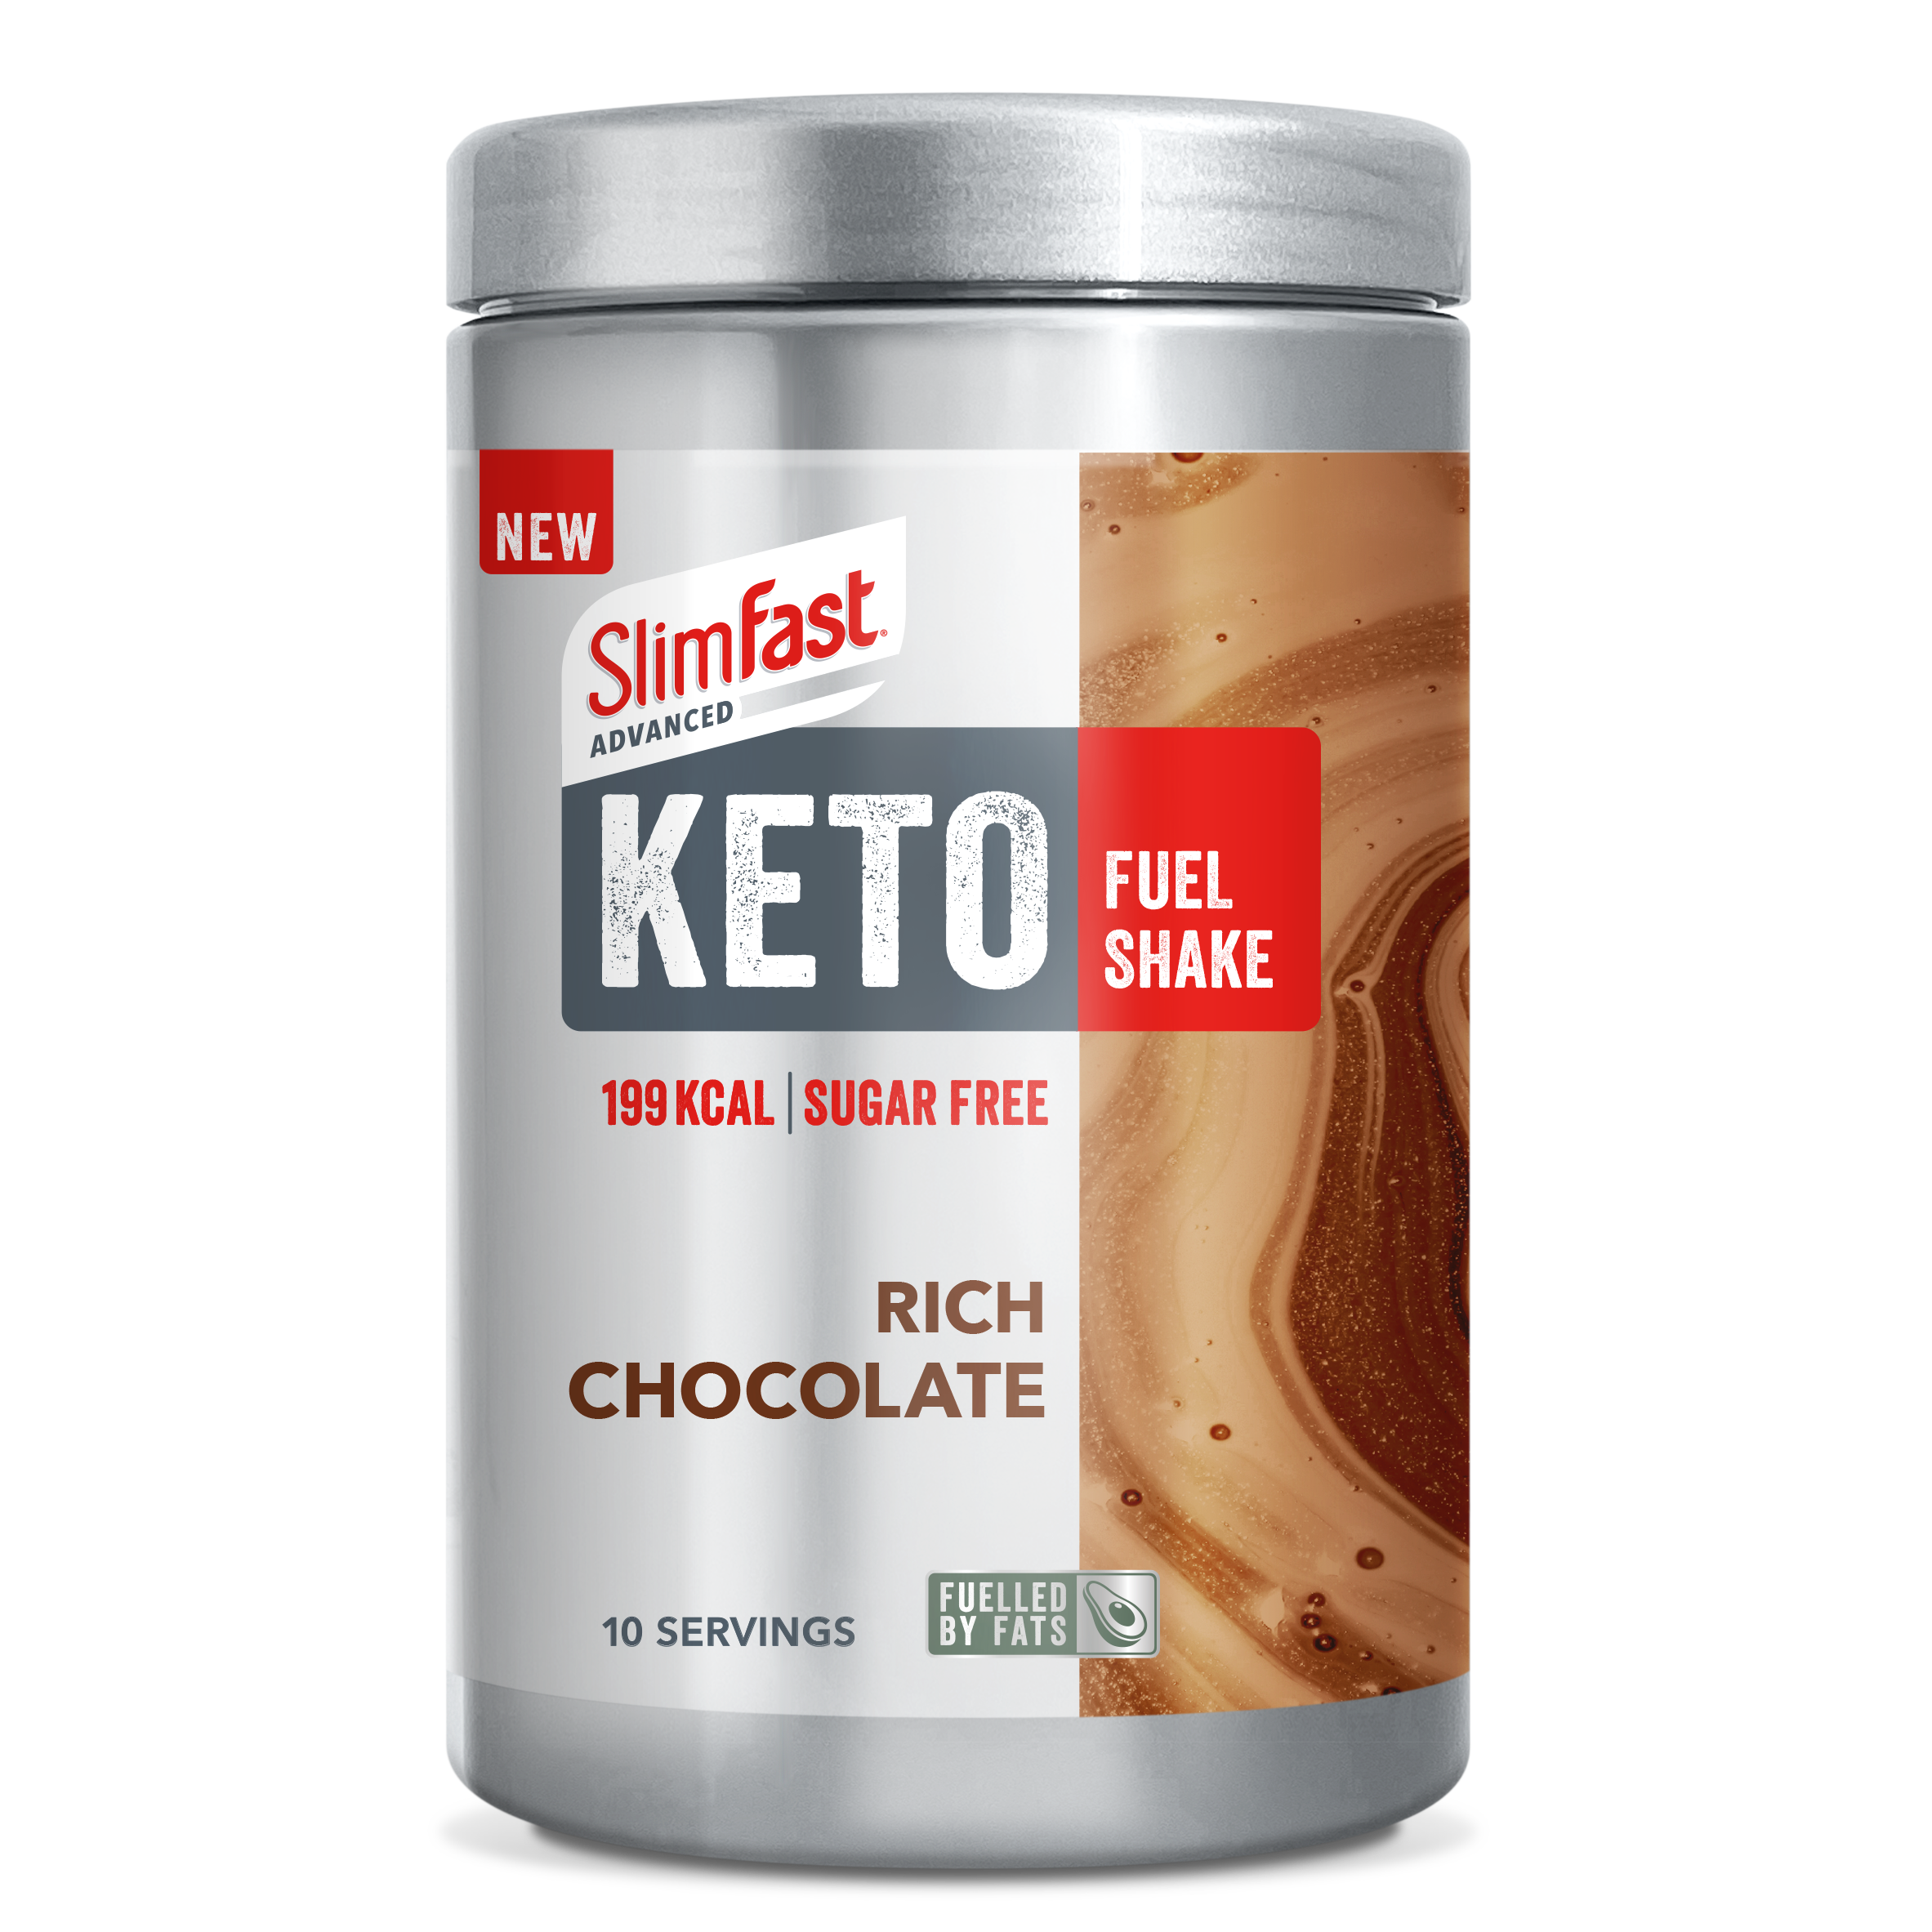 Rich Chocolate Keto Fuel Shake